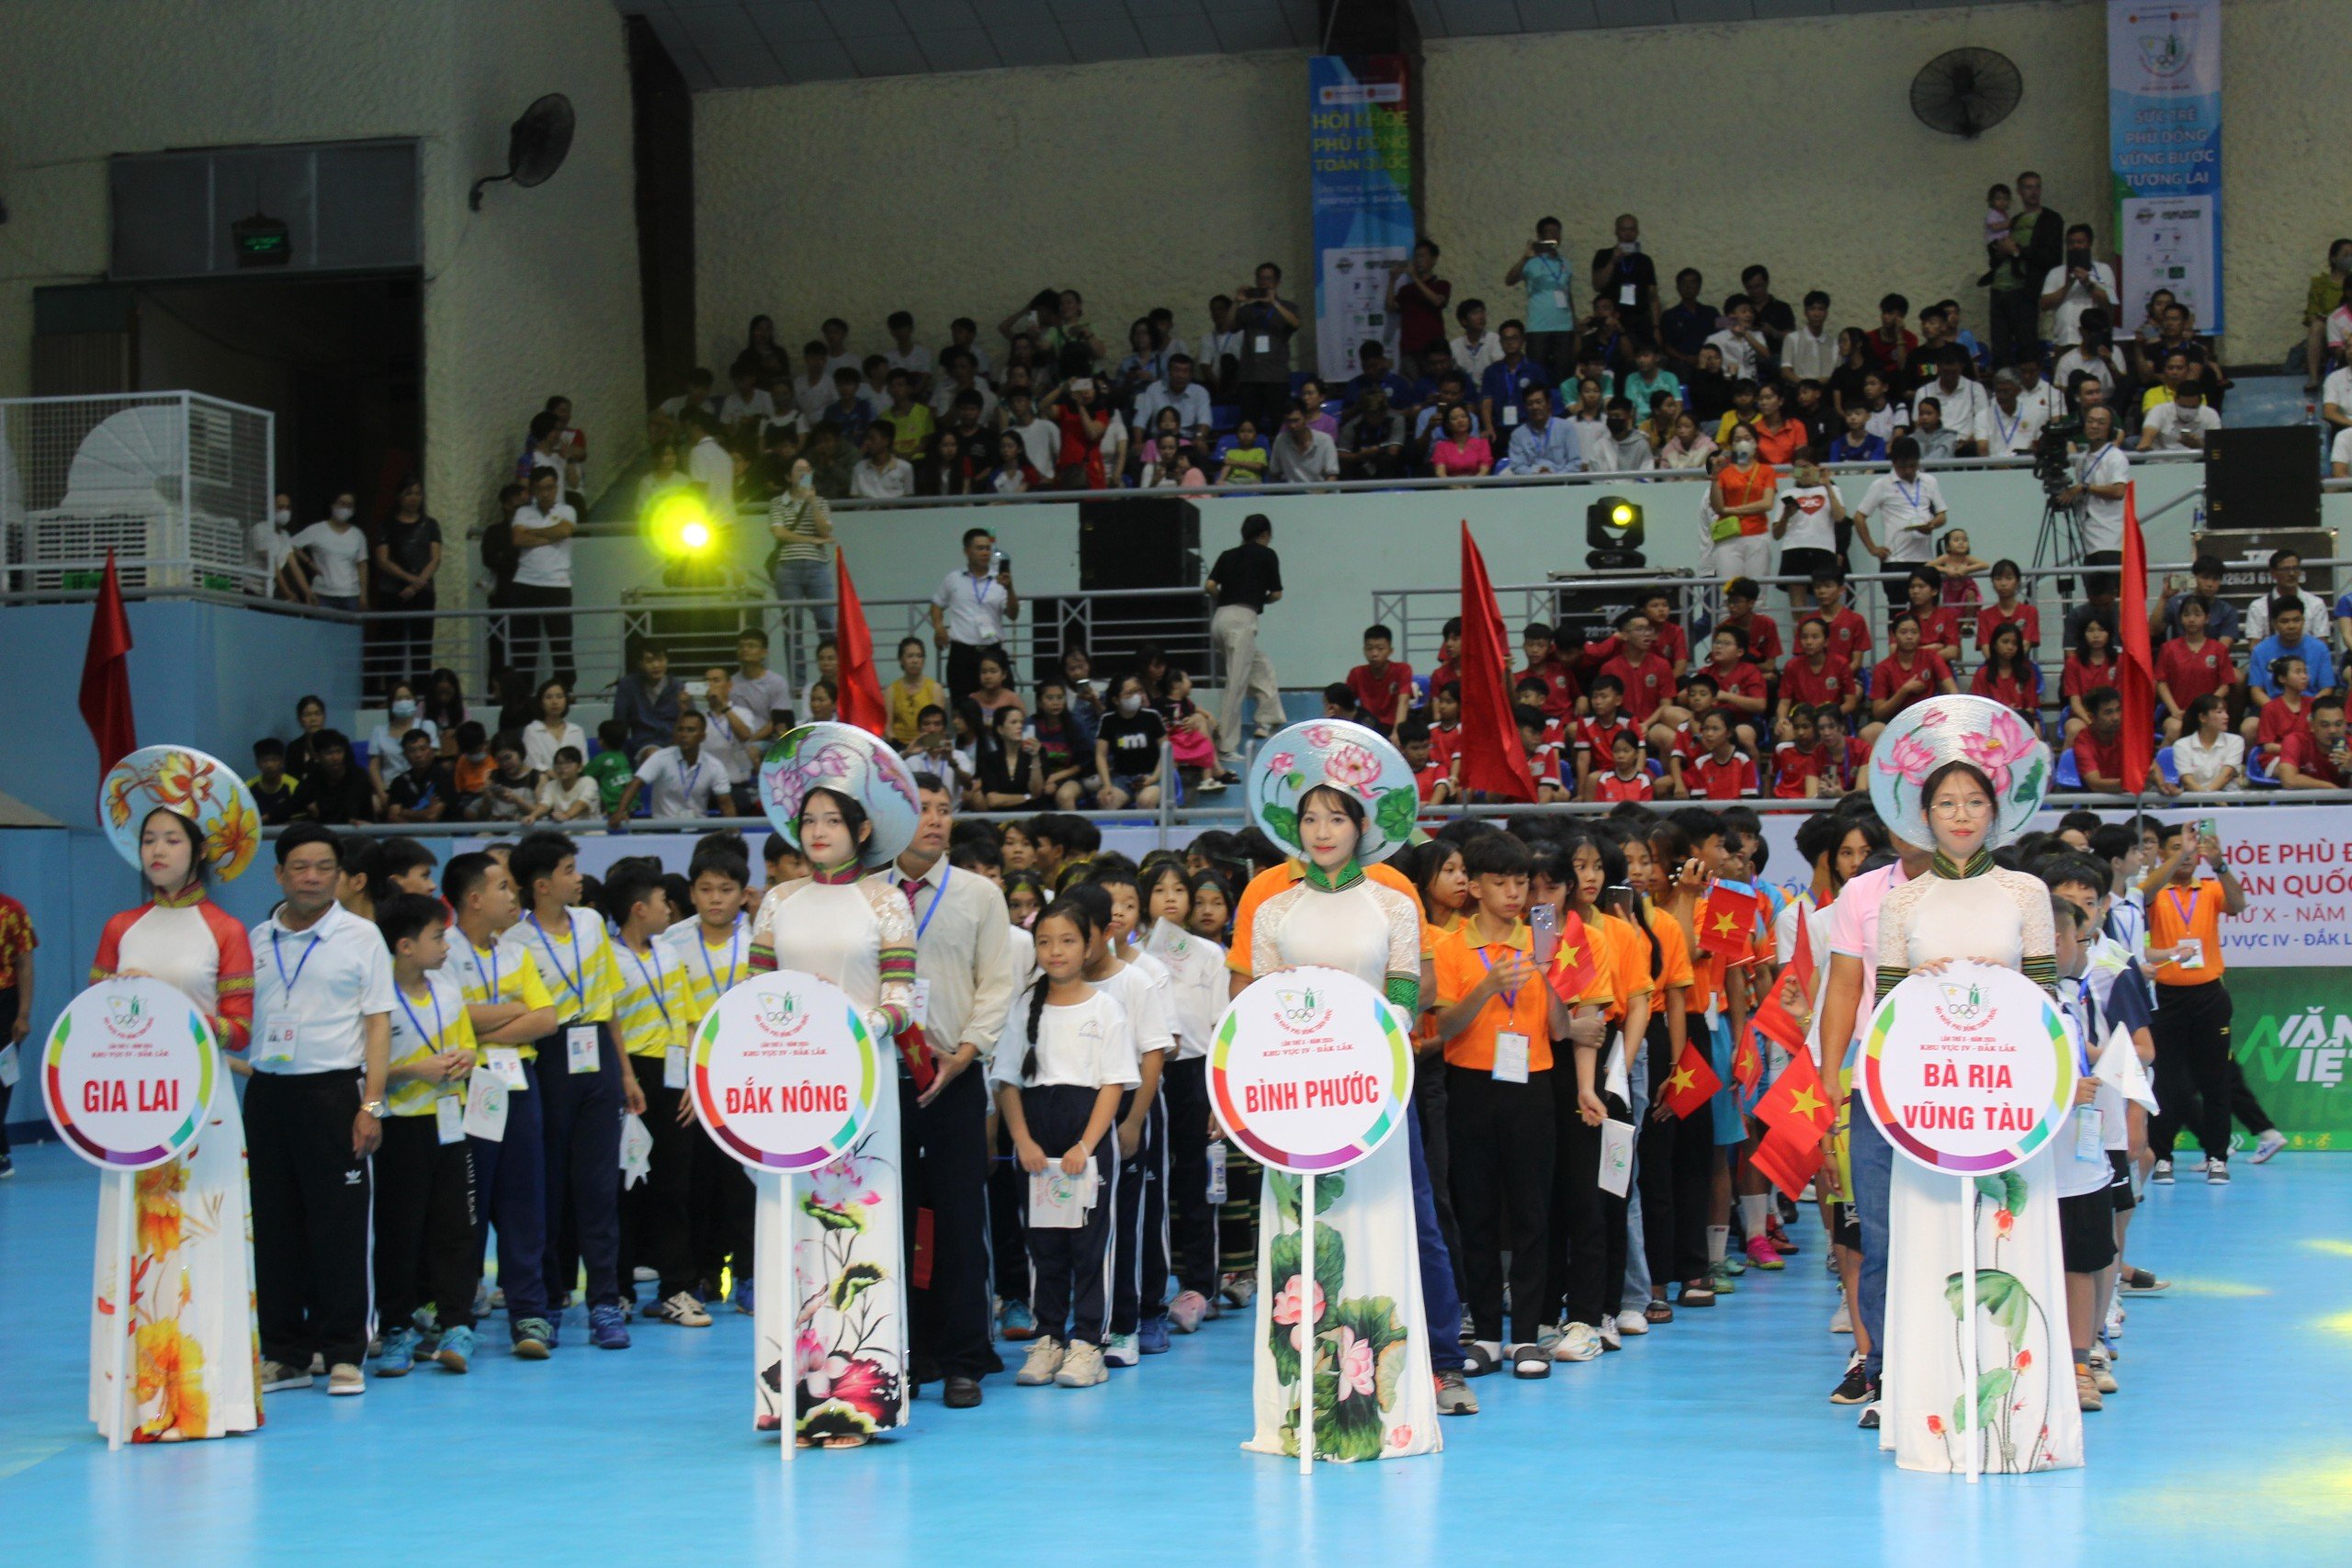 Bà Rịa - Vũng Tàu có 63 VĐV tranh tài 5 môn thi đấu tại HKPĐ toàn quốc lần thứ X, khu vực IV.